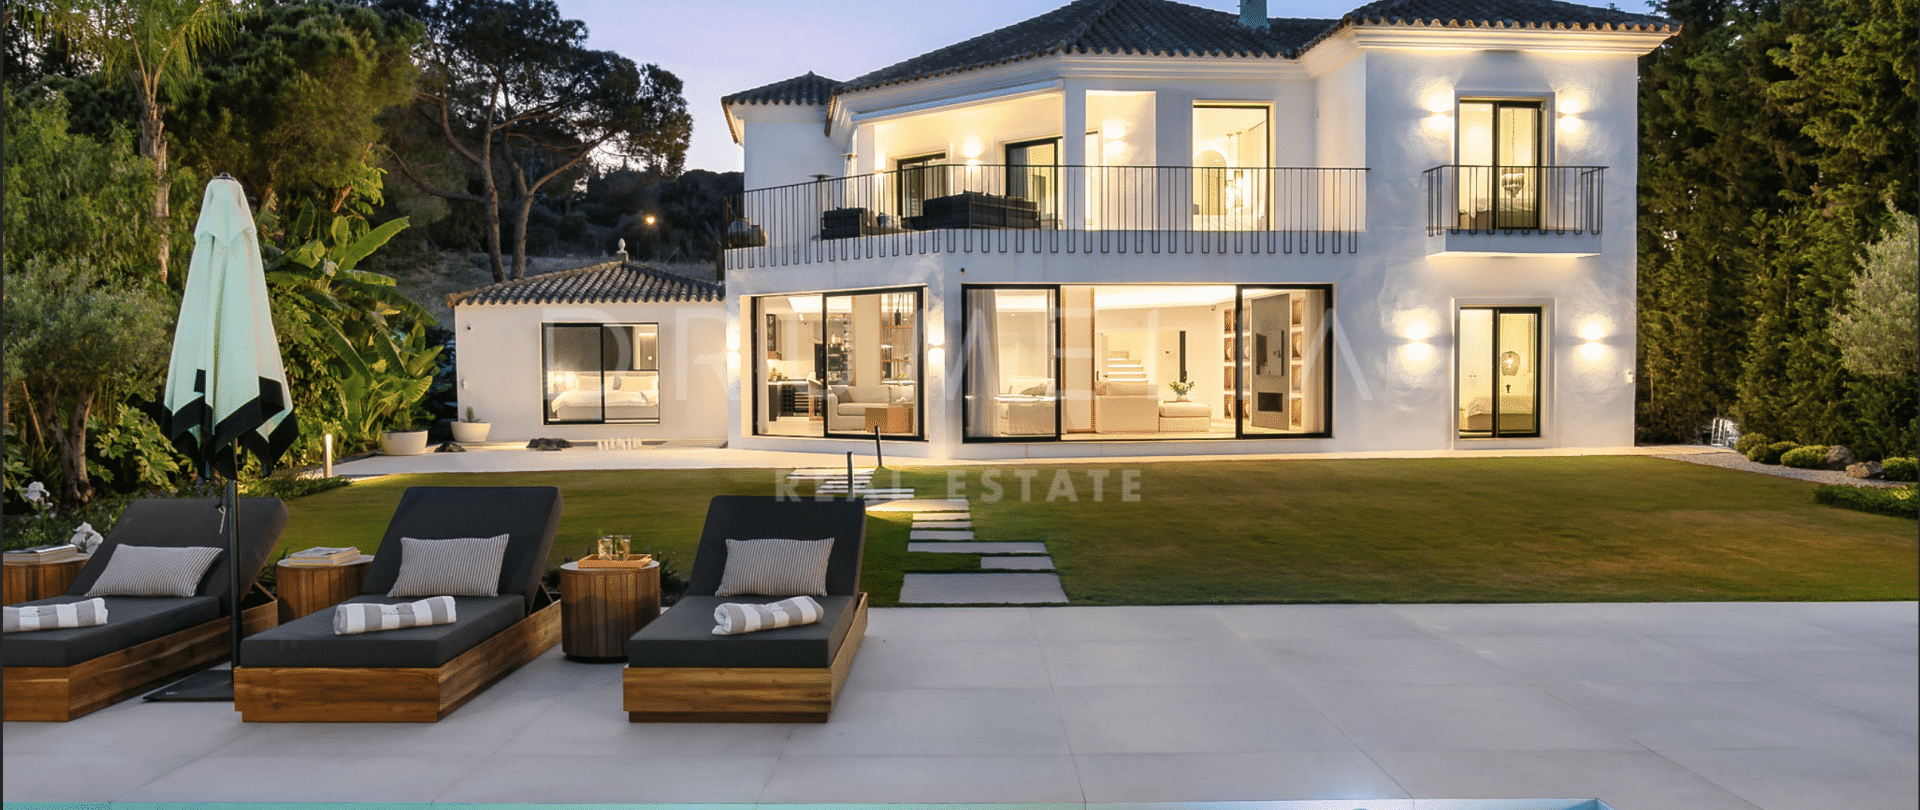 Sofisticada y elegante villa moderna de alta gama en la hermosa Nueva Andalucía, Marbella